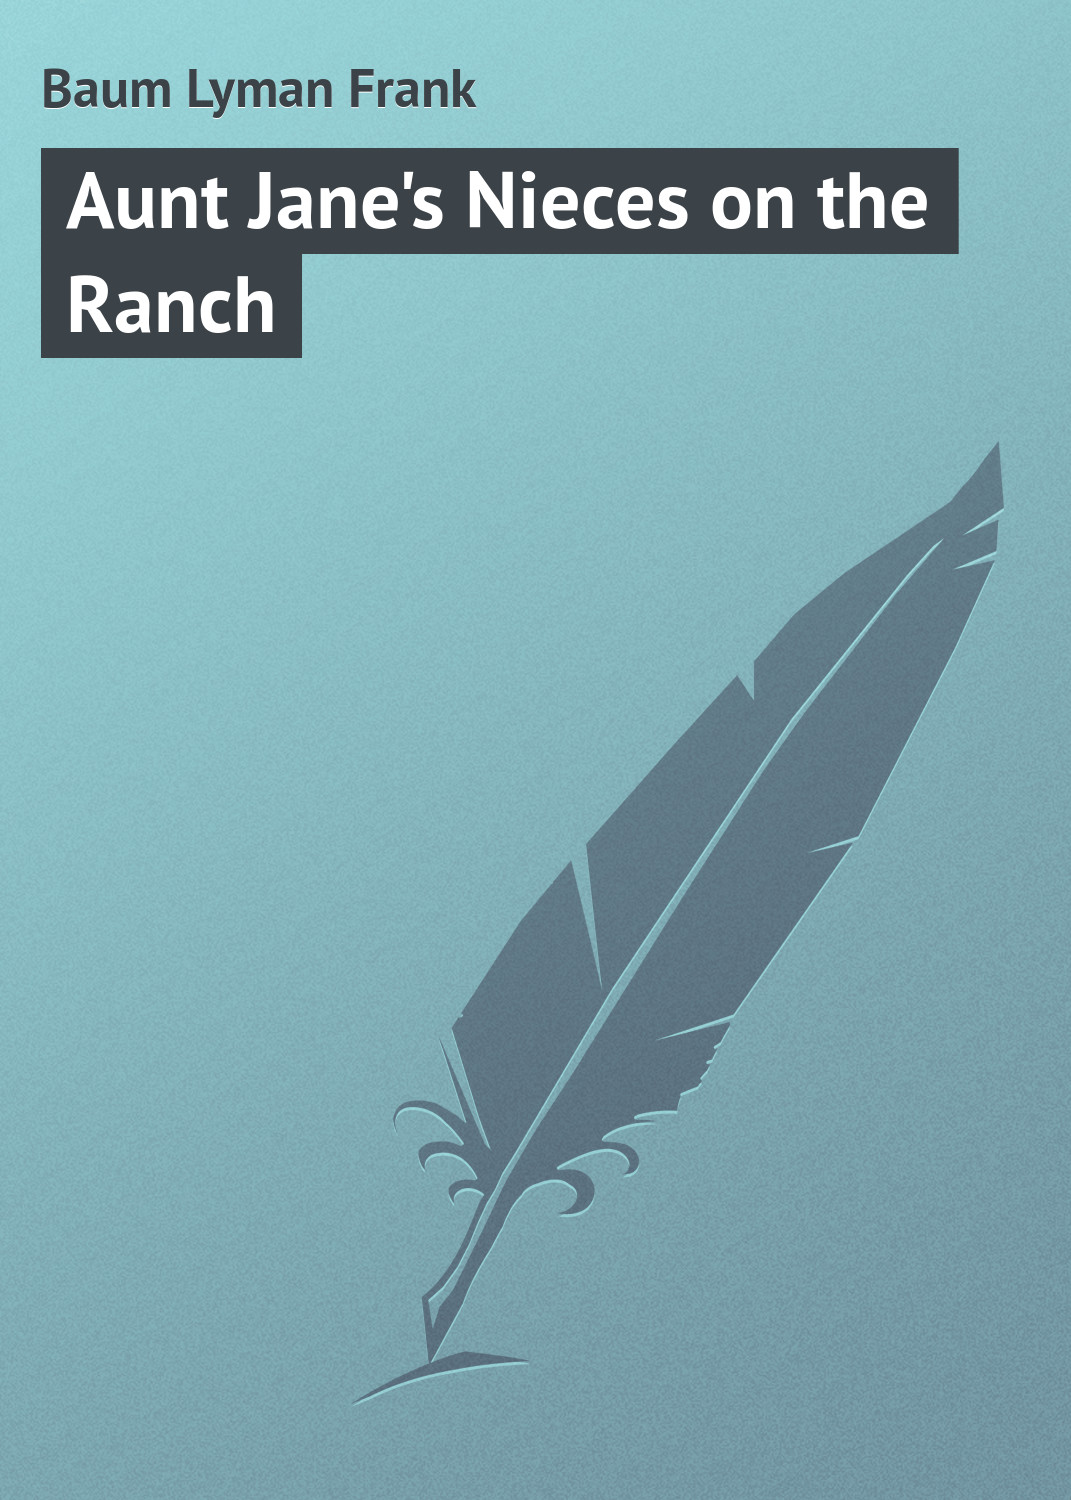 Книга Aunt Jane's Nieces on the Ranch из серии , созданная Lyman Baum, может относится к жанру Классические детективы, Зарубежные детективы, Зарубежная классика. Стоимость электронной книги Aunt Jane's Nieces on the Ranch с идентификатором 23147859 составляет 5.99 руб.